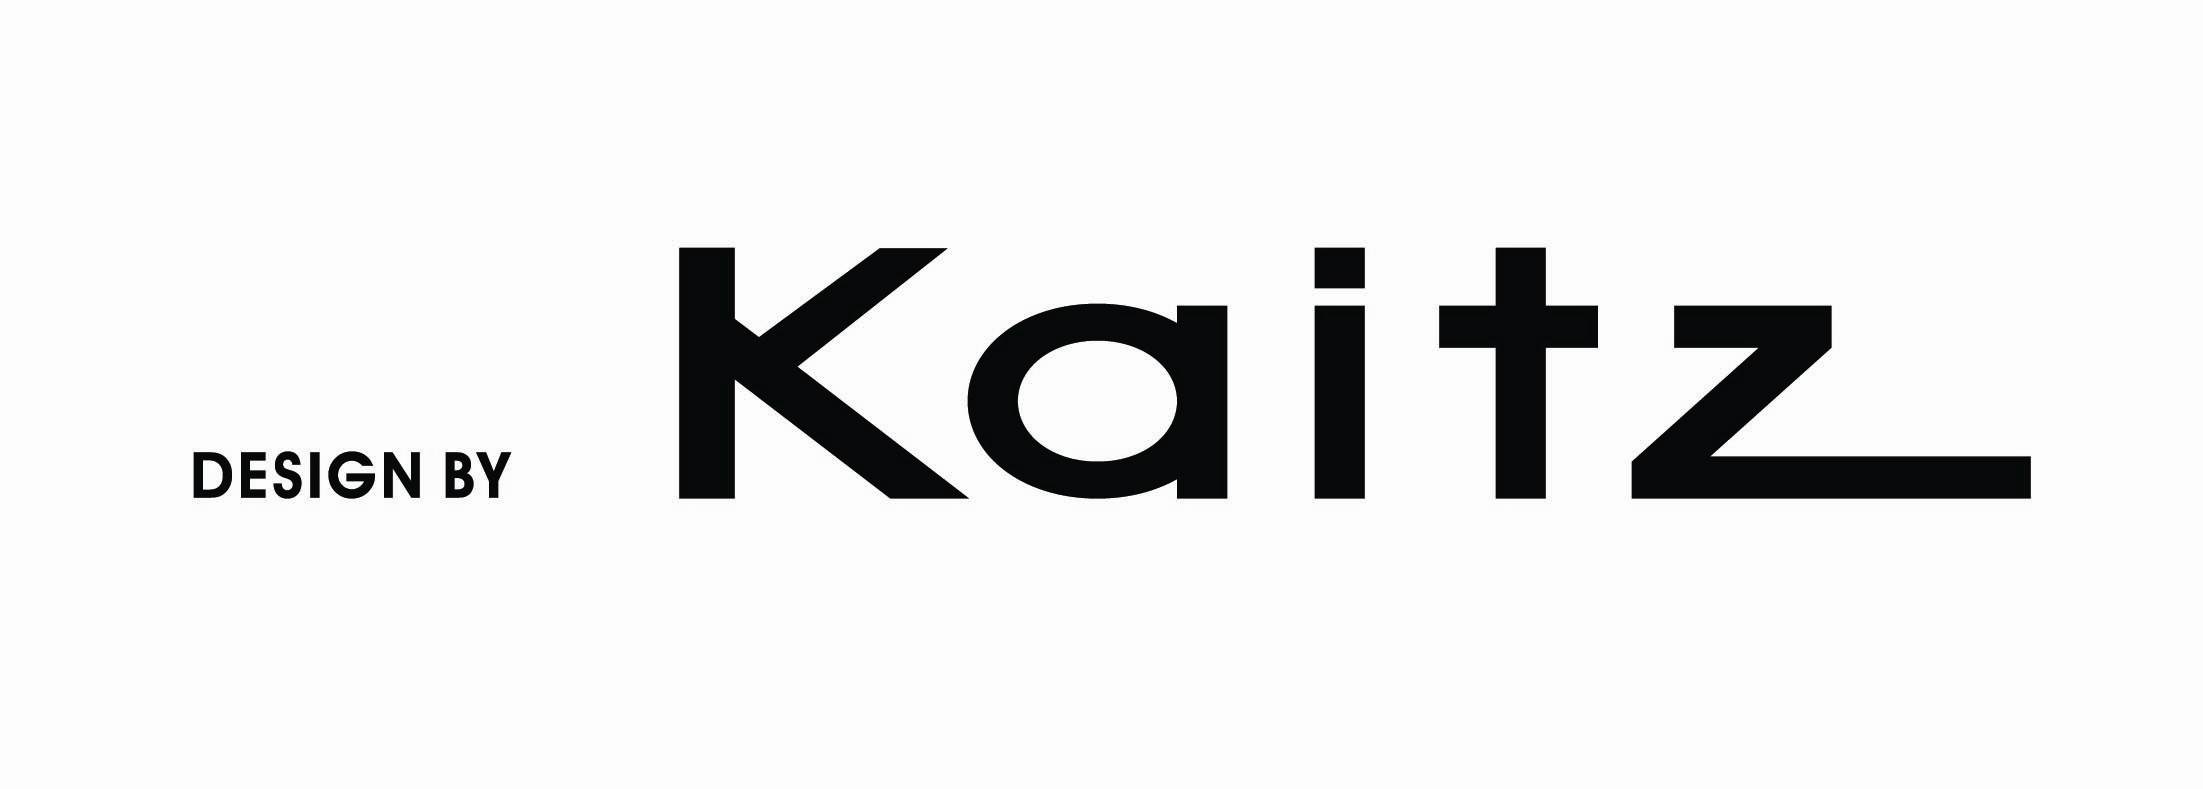 卡托姿kaitz輔助logo